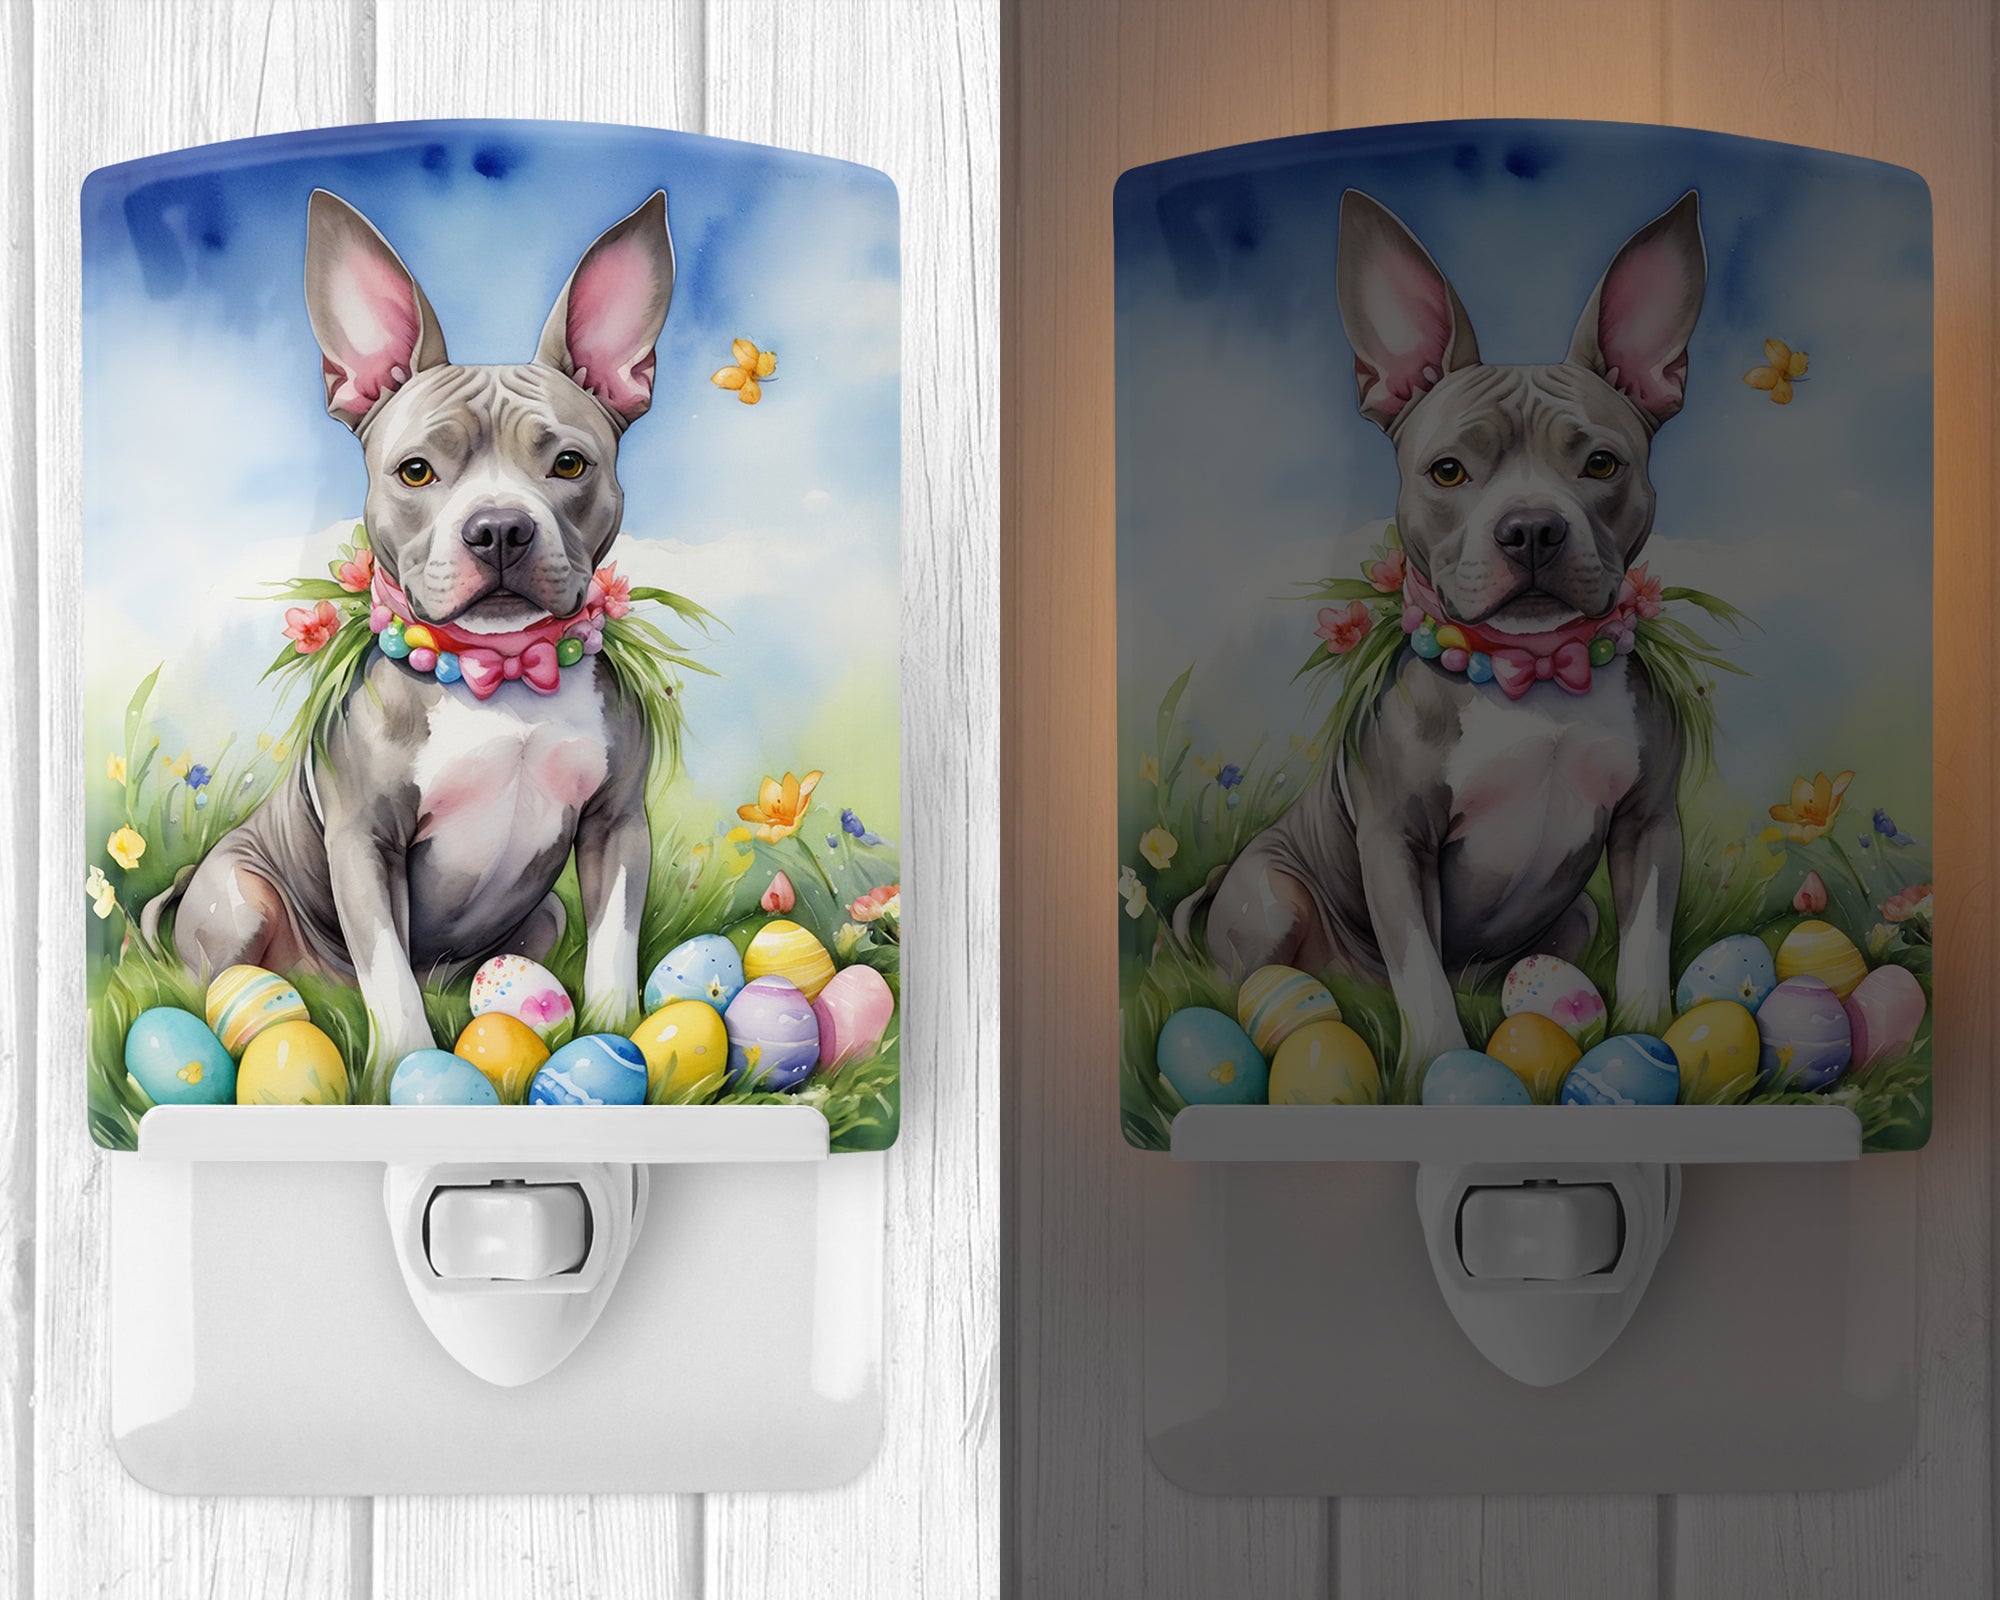 Buy this Pit Bull Terrier Easter Egg Hunt Ceramic Night Light